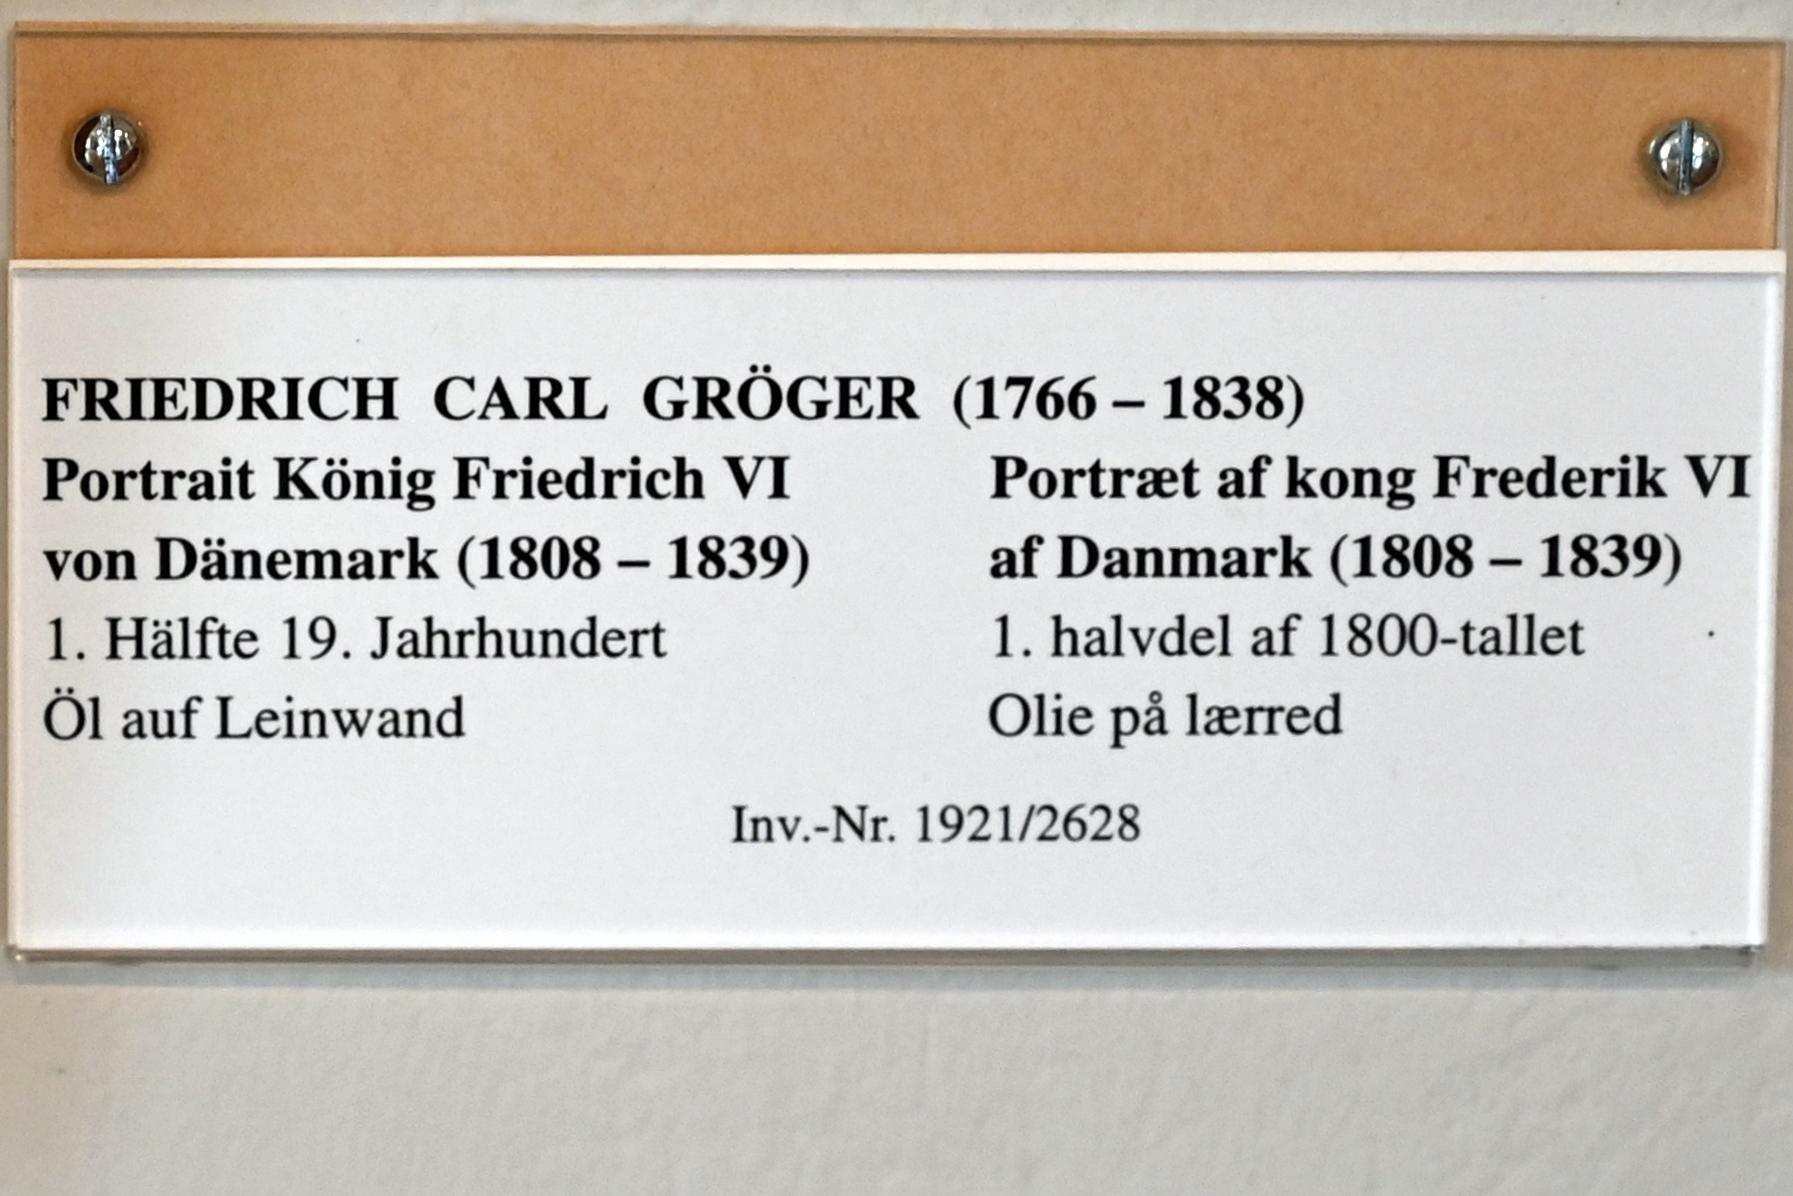 Friedrich Carl Gröger (1800–1838), Portrait König Friedrich VI von Dänemark (1808-1839), Schleswig, Landesmuseum für Kunst und Kulturgeschichte, Saal 37, 1. Hälfte 19. Jhd., Bild 2/2